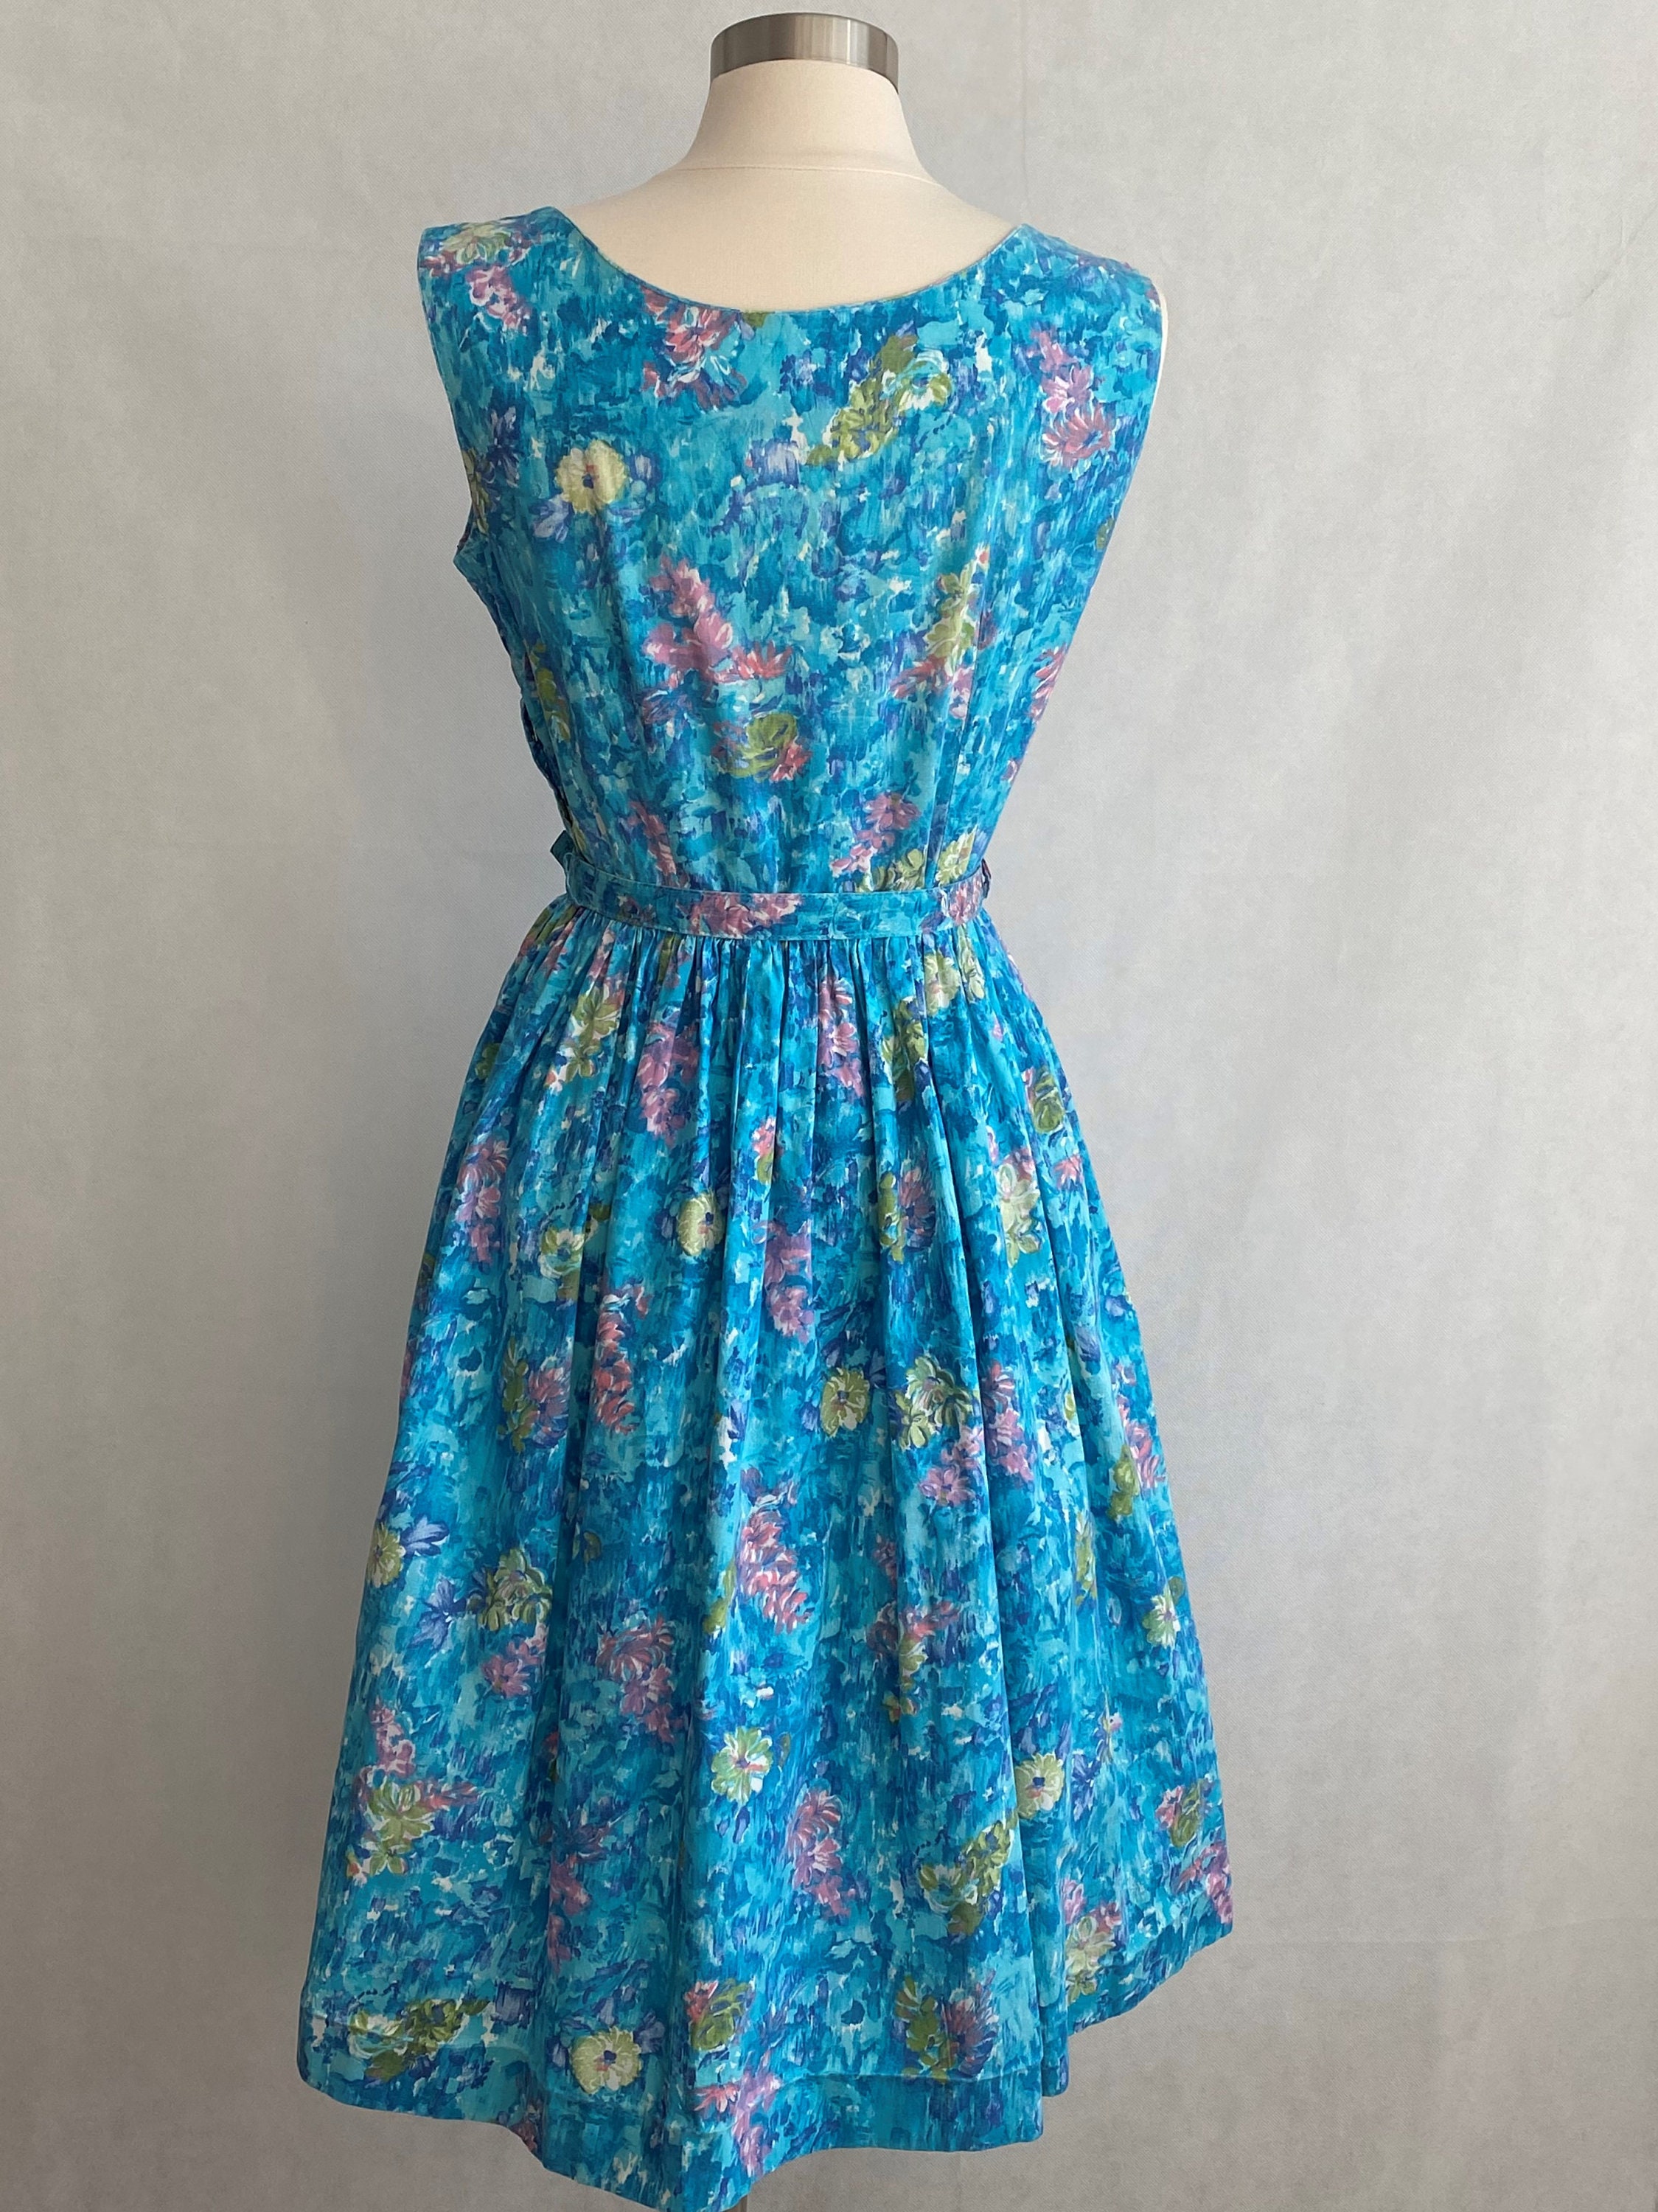 Vintage 50's Blue Floral Day Dress Vintage Fashion | Etsy